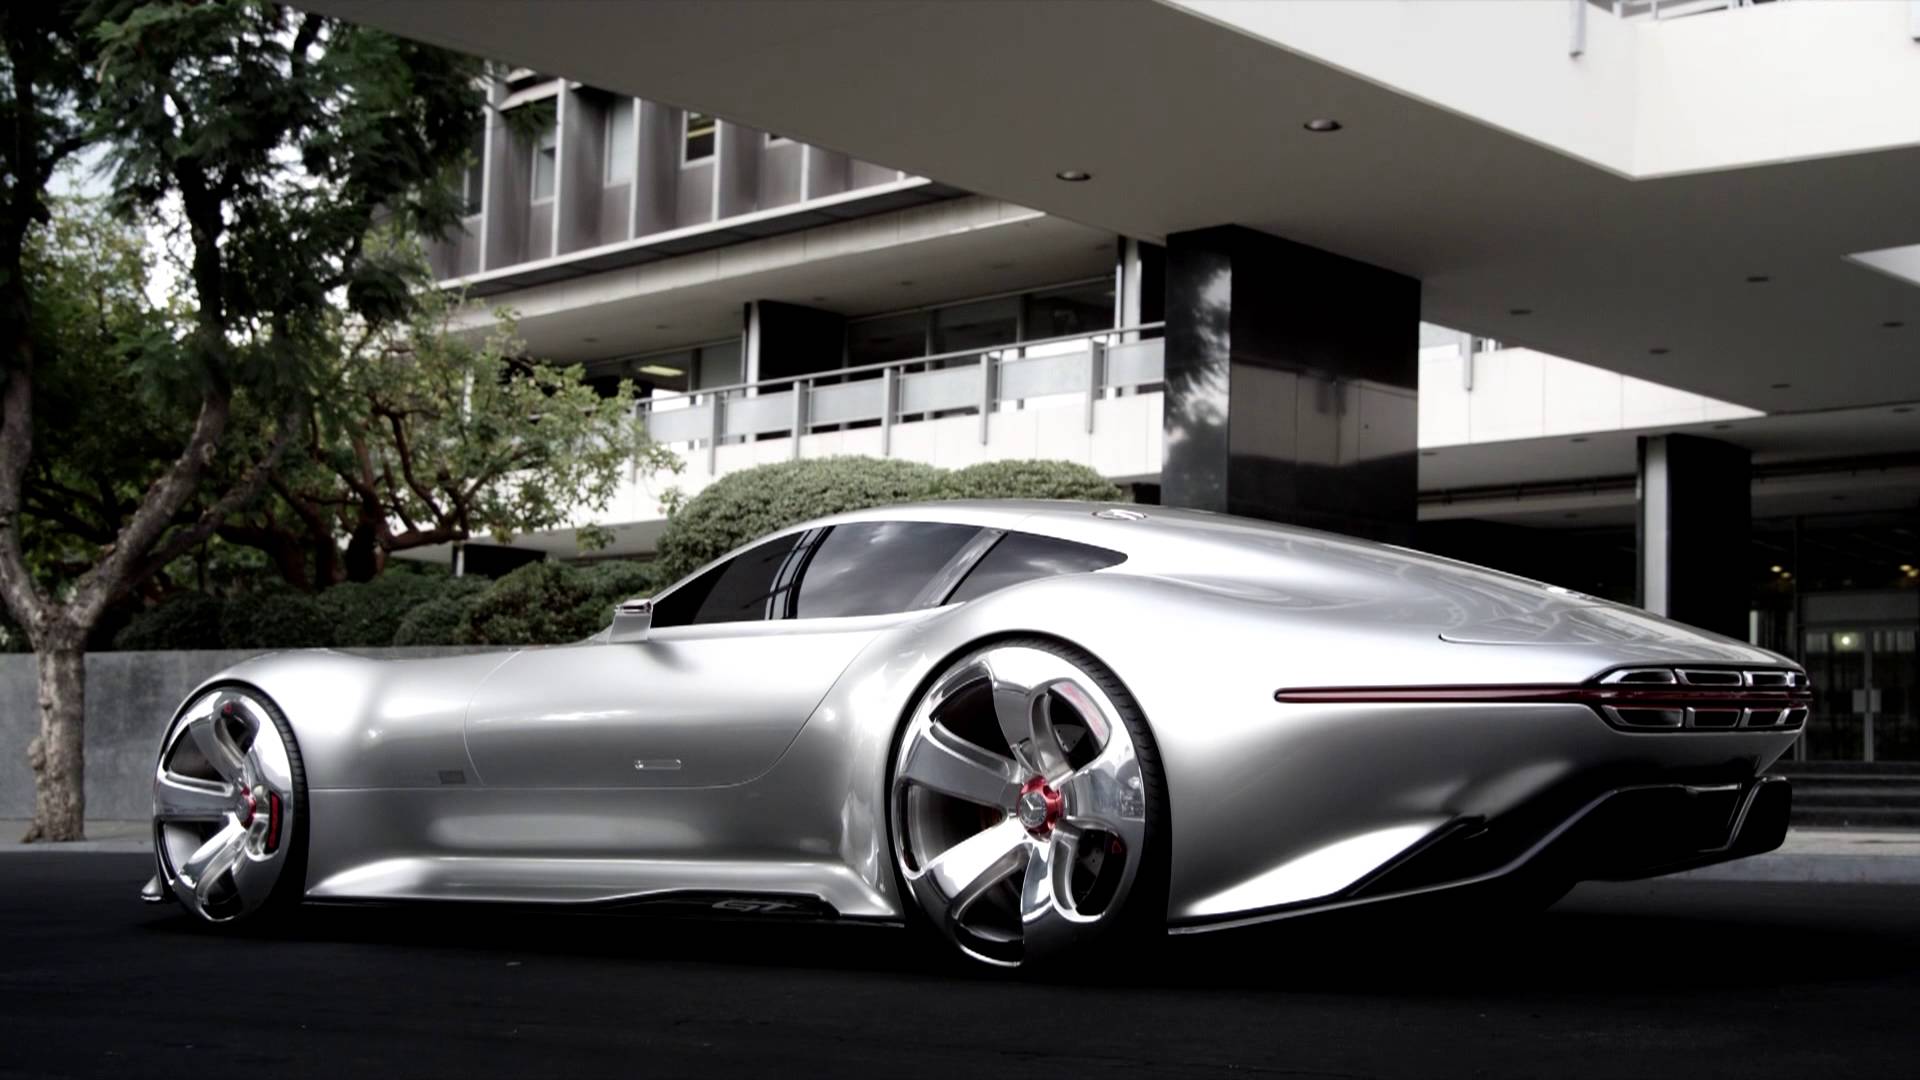 Mercedes Benz Amg Vision Gran Turismo Concept